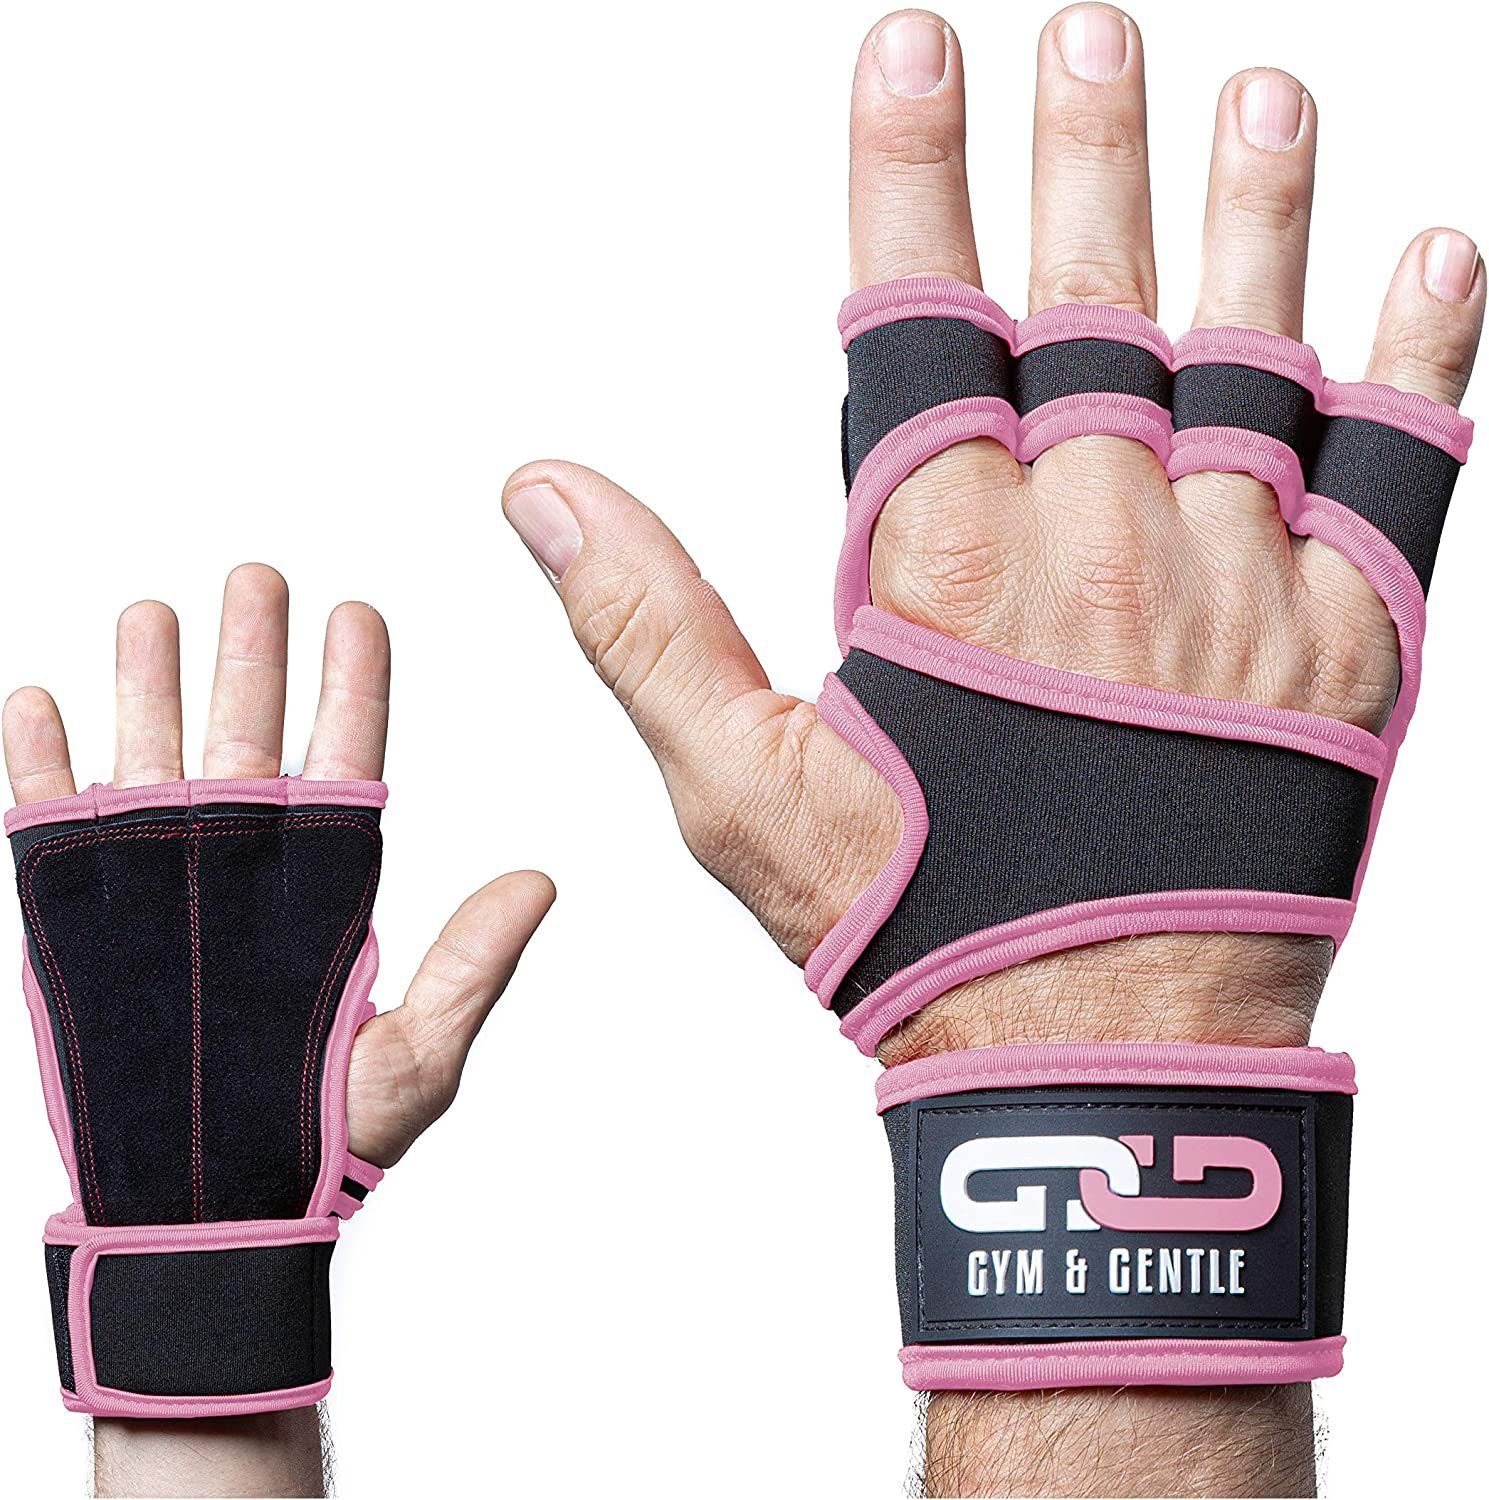 Gym & Gentle Multisporthandschuhe Fitnesshandschuhe mit Handgelenkstütze für Männer und Frauen geringes Gewicht rosa | Trainingshandschuhe